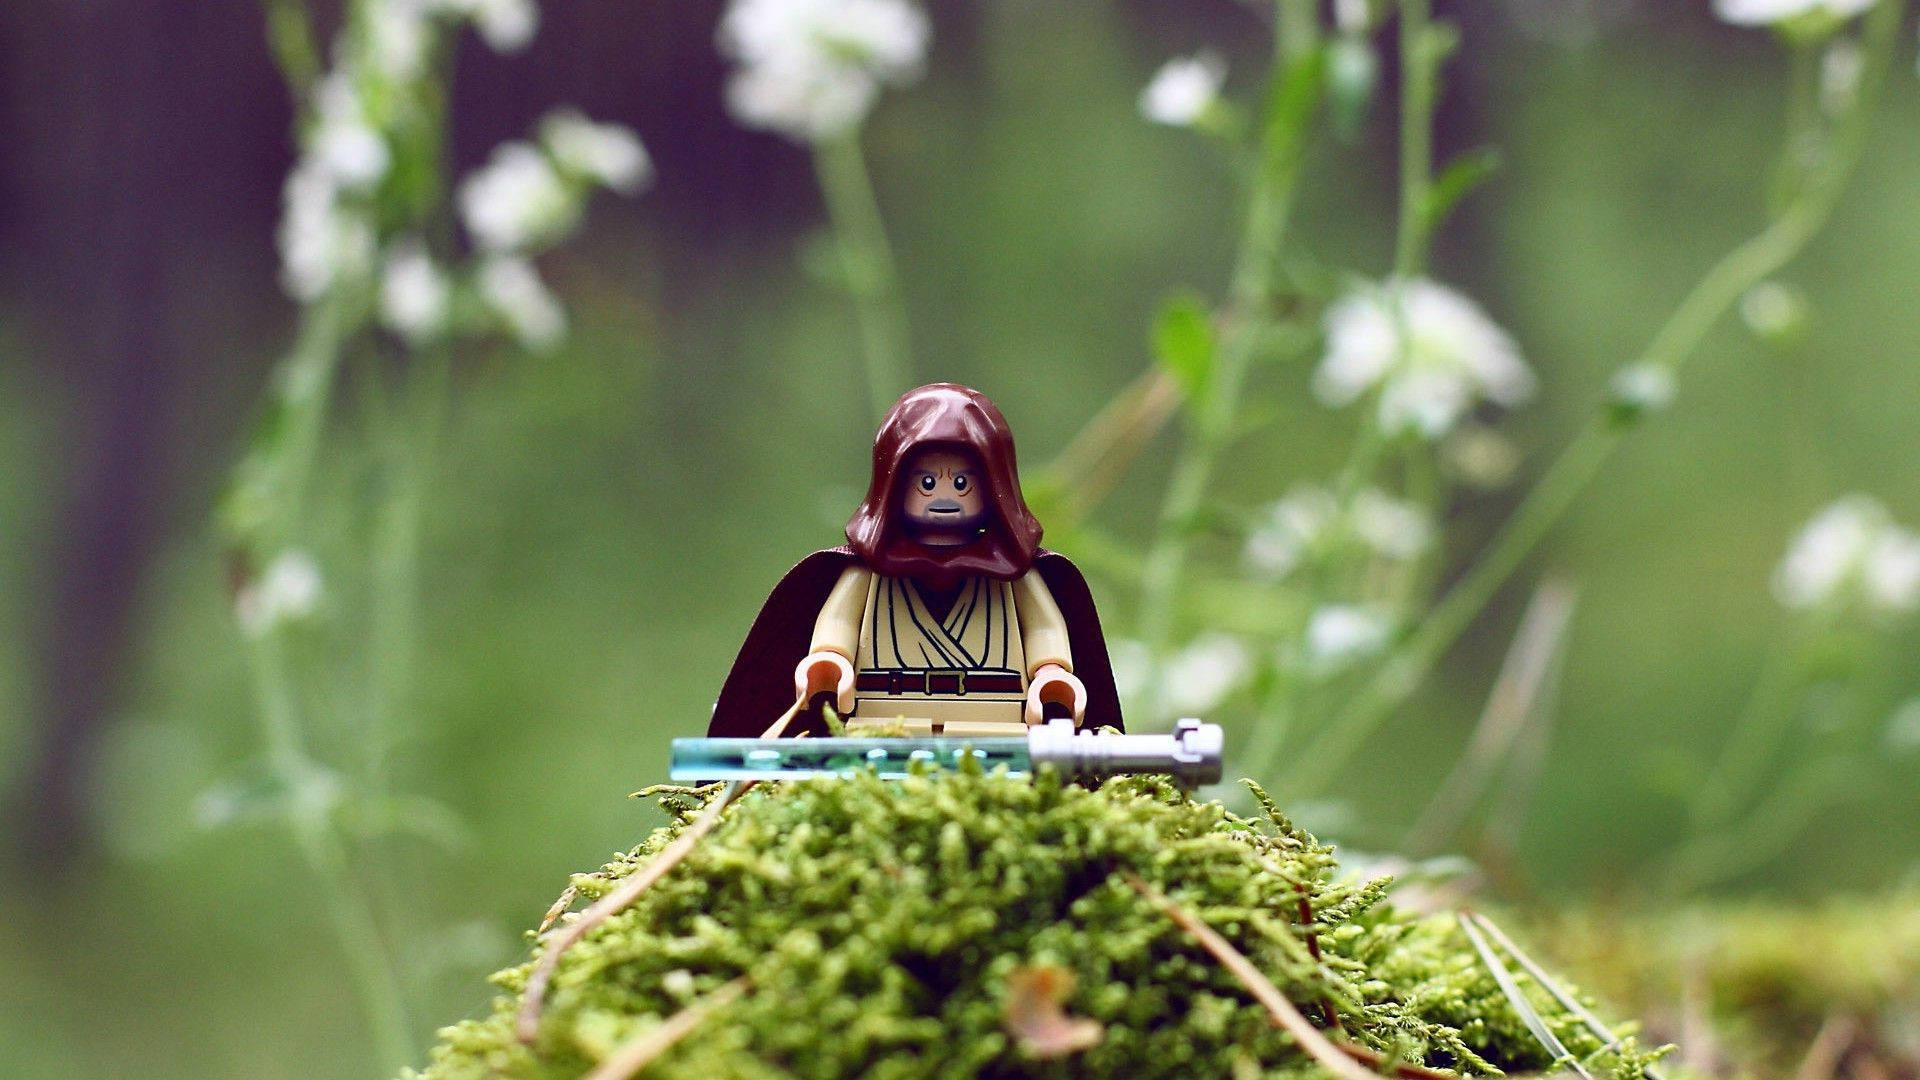 Lego Star Wars - Luke Skywalker. Wallpaper